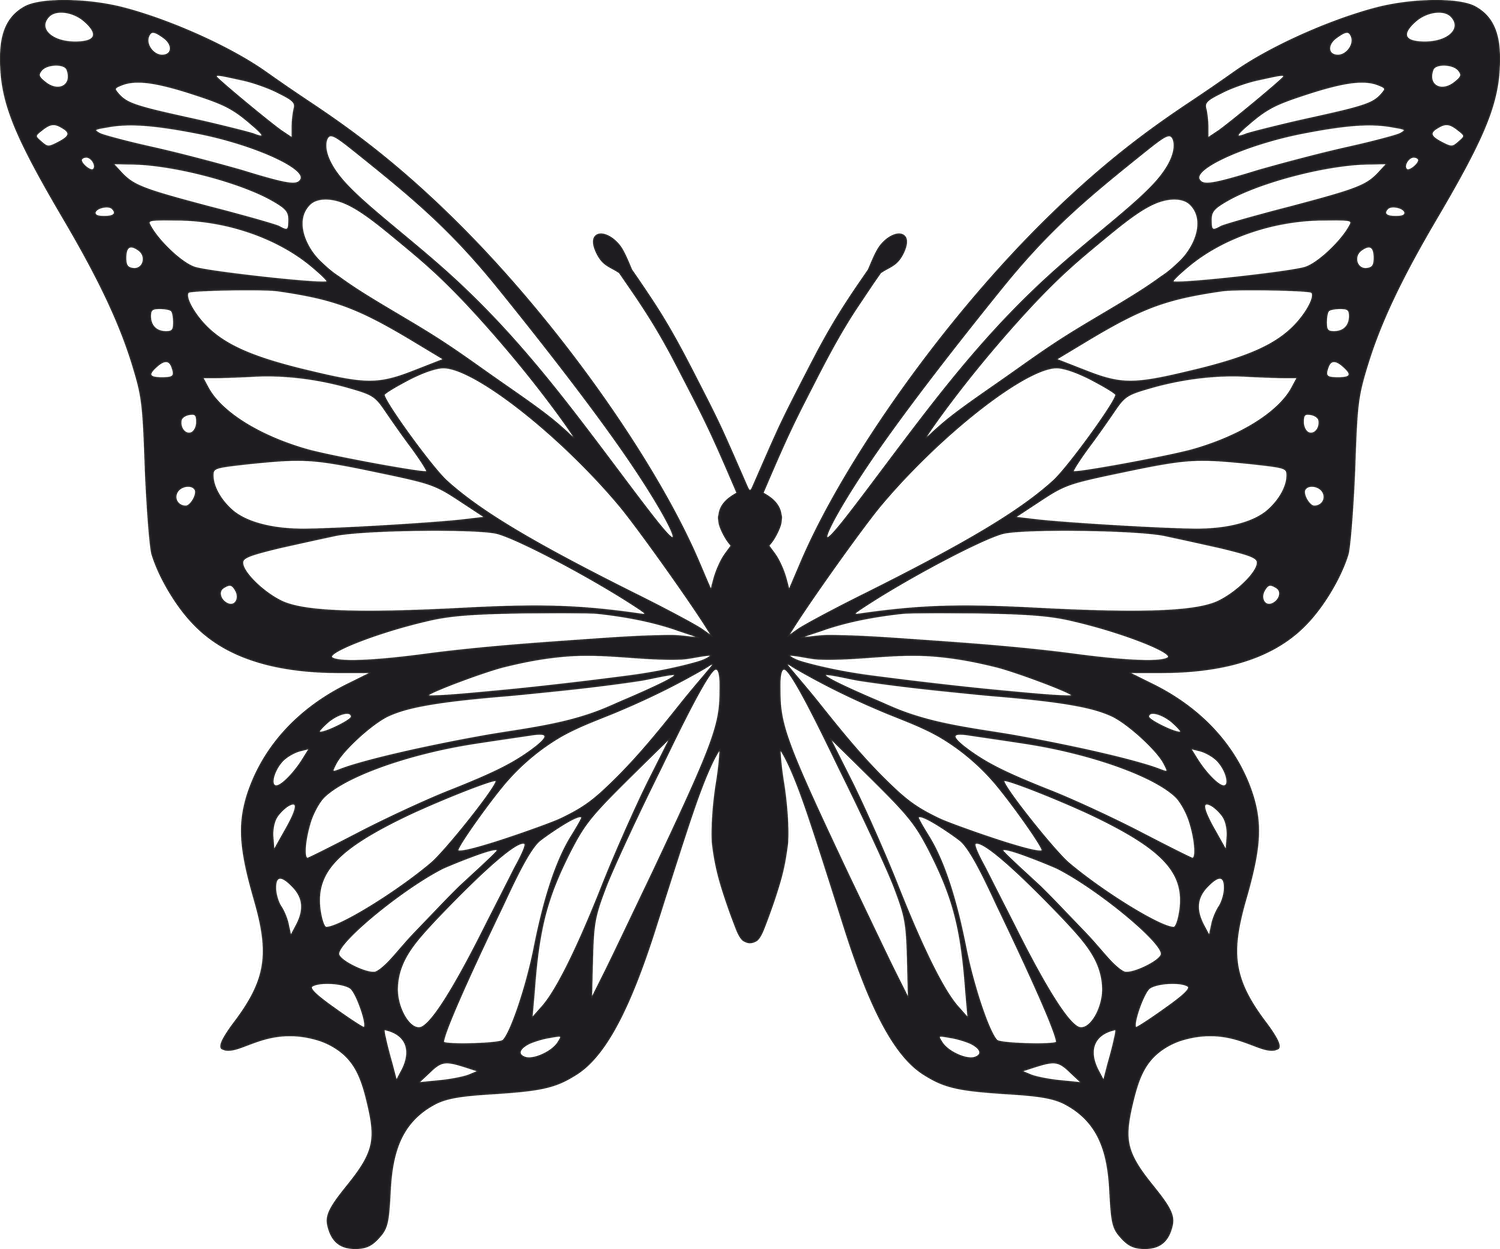 Vsepropejska Motýl dekorace na zeď 4 Rozměr (cm): 38 x 31, Dekor: Černá